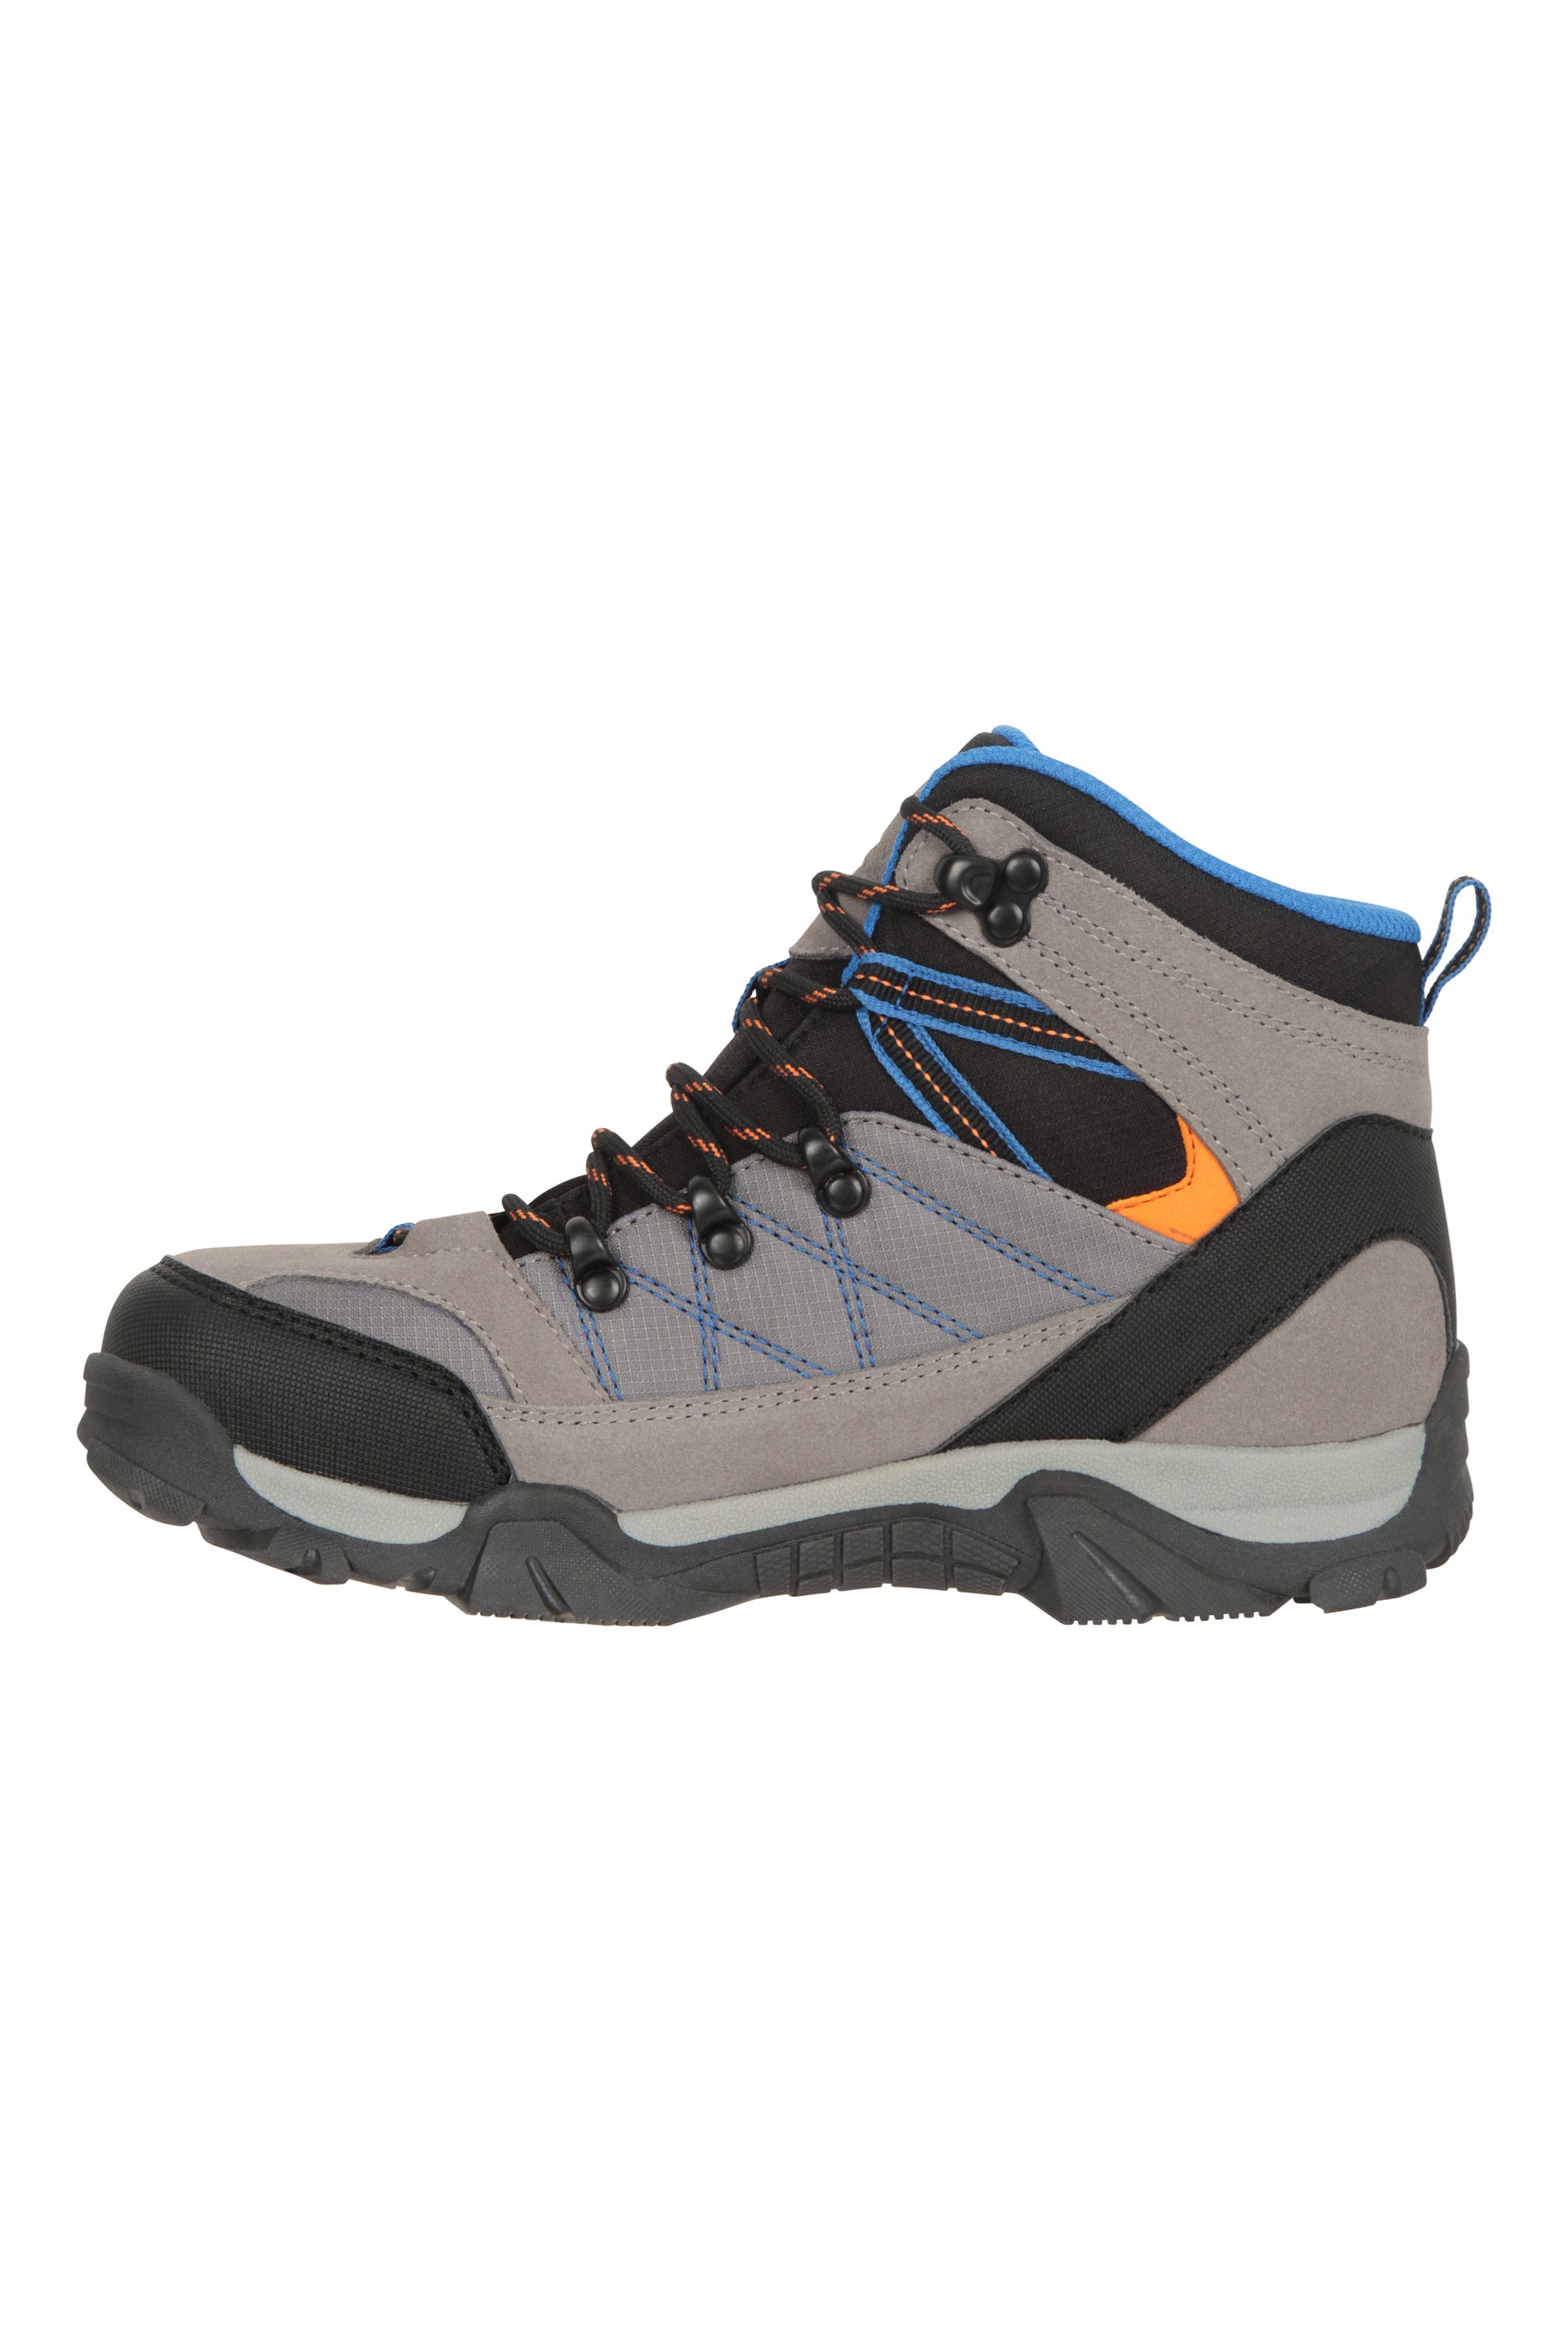 Trail Kids Waterproof Walking Boots | Mountain Warehouse GB